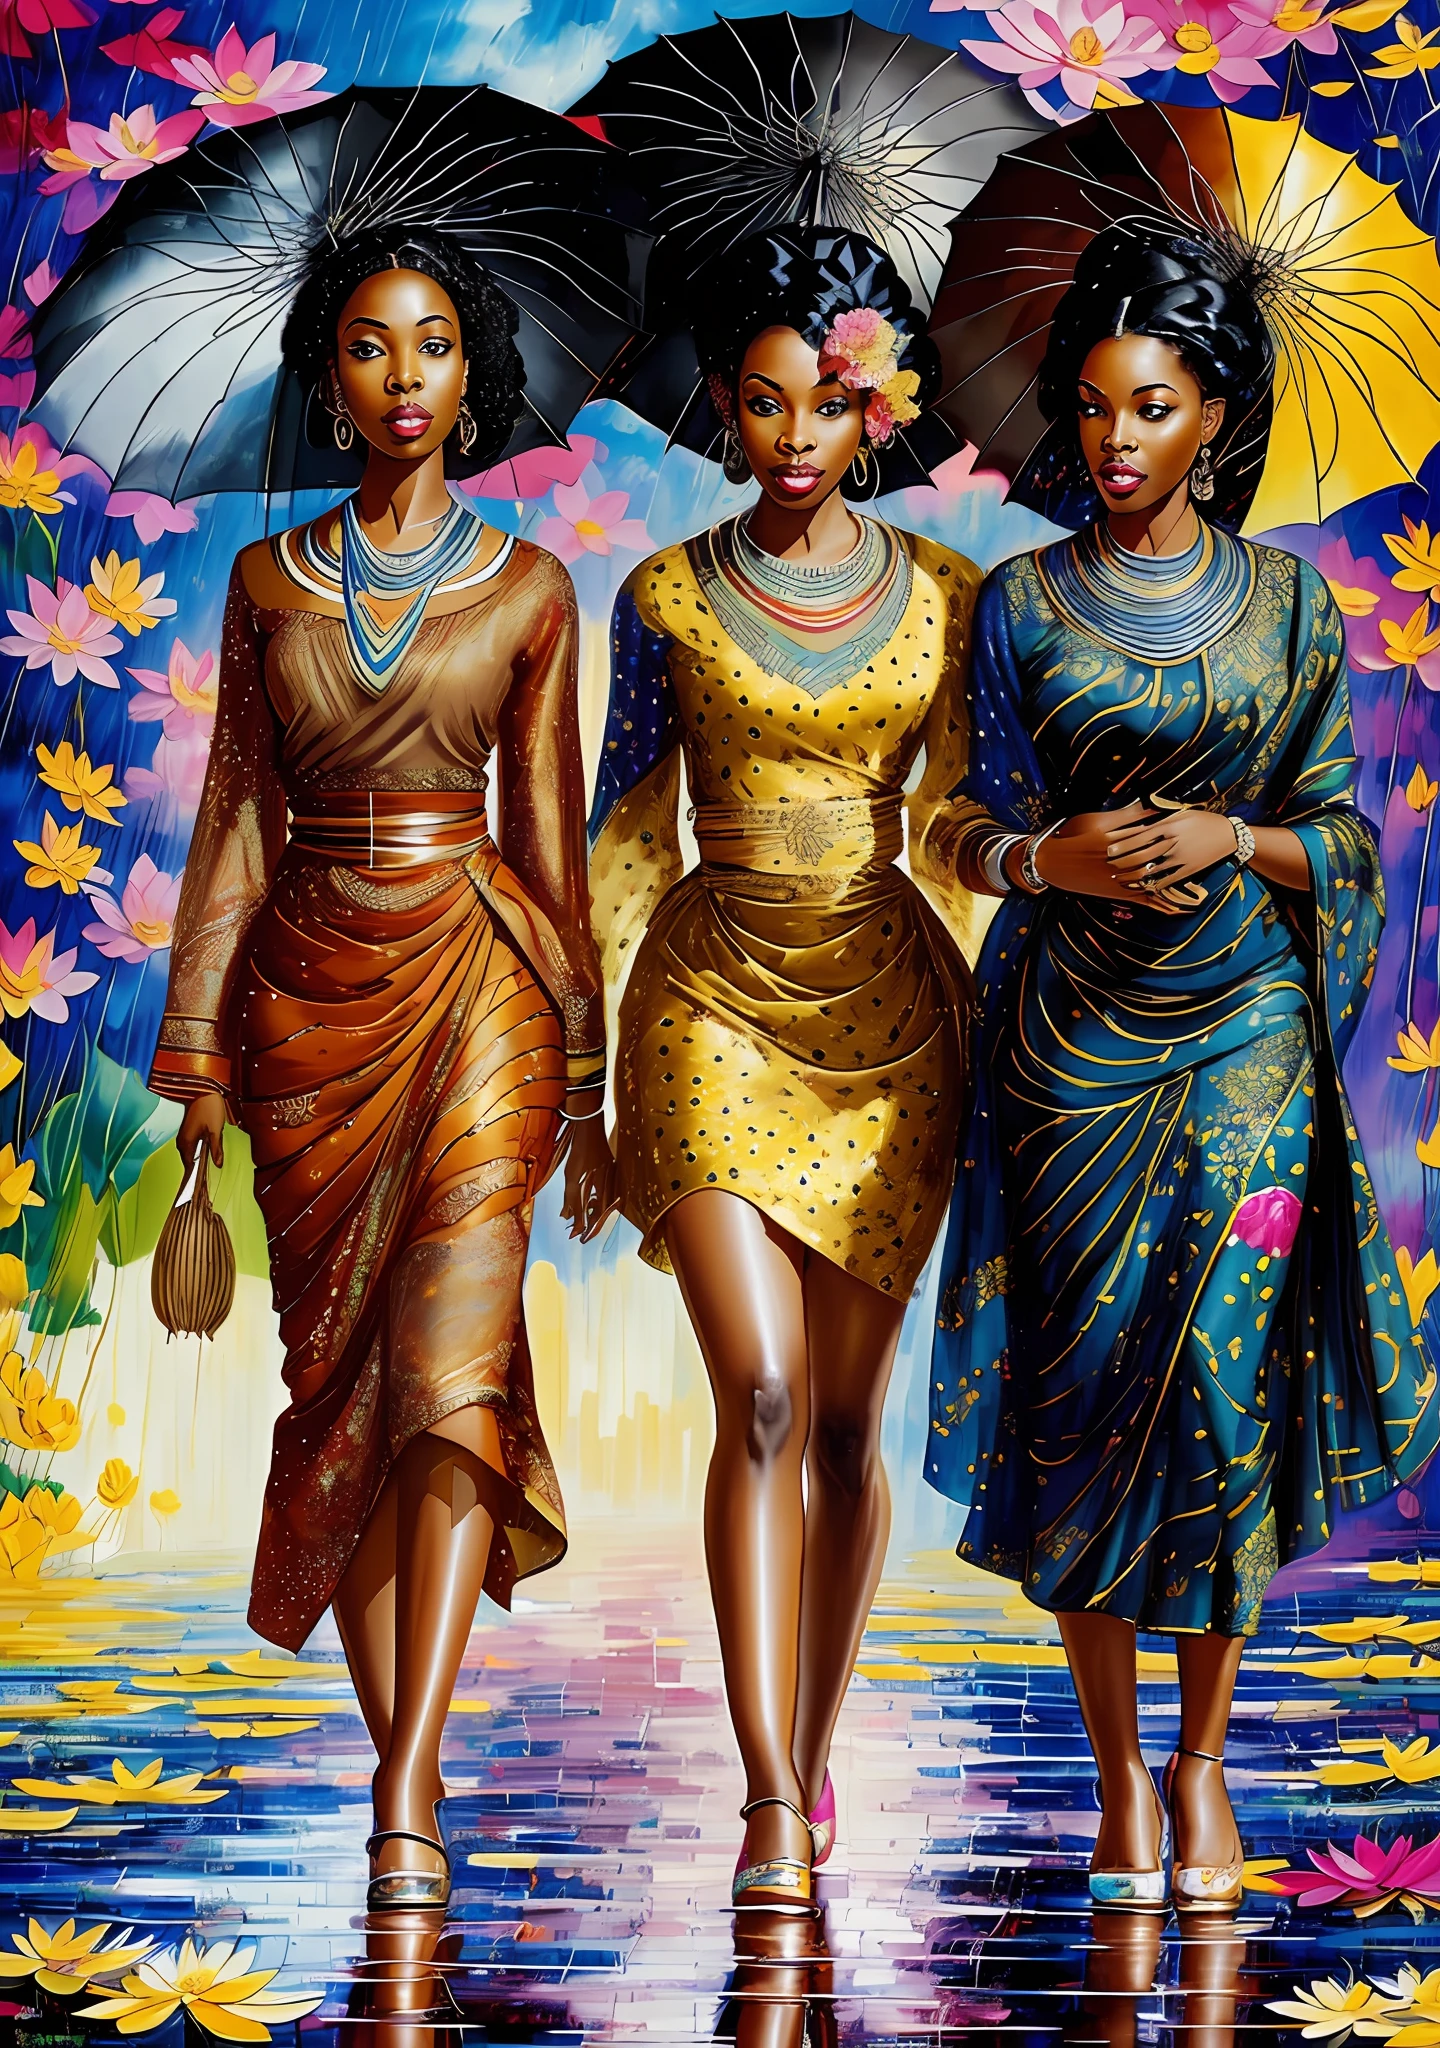 アフリカの衣装を着た3人の黒人女性, 傘をさして蓮の花とともに雨の中を歩く, 美しい絵画 of friends, 美しい女性, チャールズ・ロカ, 感動的な芸術, 美しい絵画, エレガントな油絵, 蓮の上に優雅に立つ, 美しい女の子, 芸術絵画, 美しい絵画, カラフルな油絵, 美しい芸術, 女神, 油絵, 精巧な油絵,  美しい芸術work, 高解像度, 4k --auto --s2